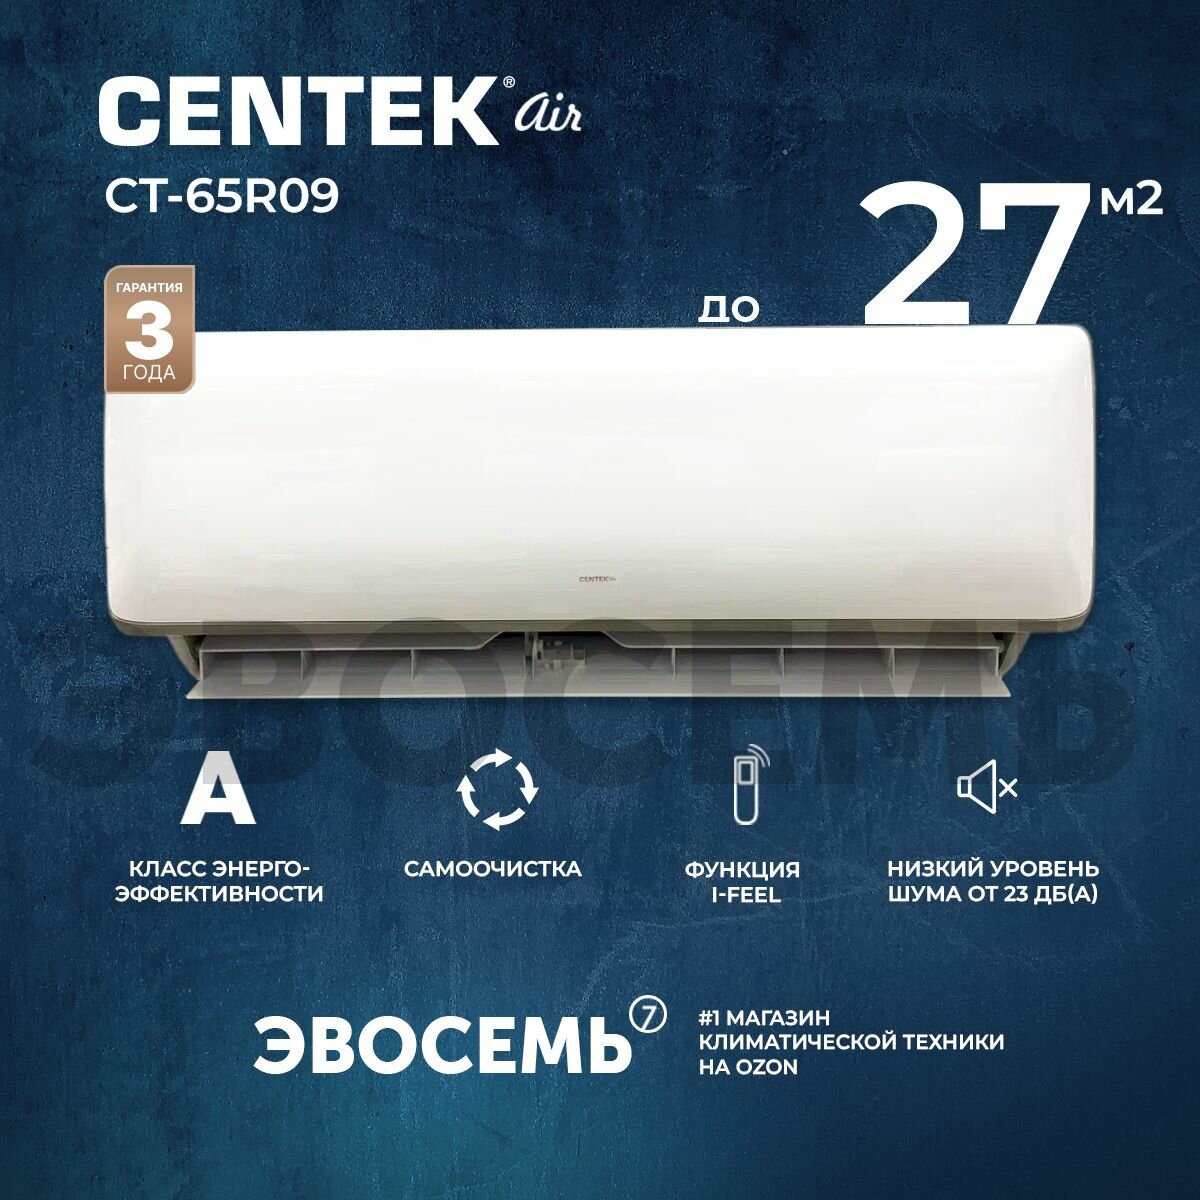 Сплит-система CENTEK CT-65R09, для помещения до 27 кв.м.